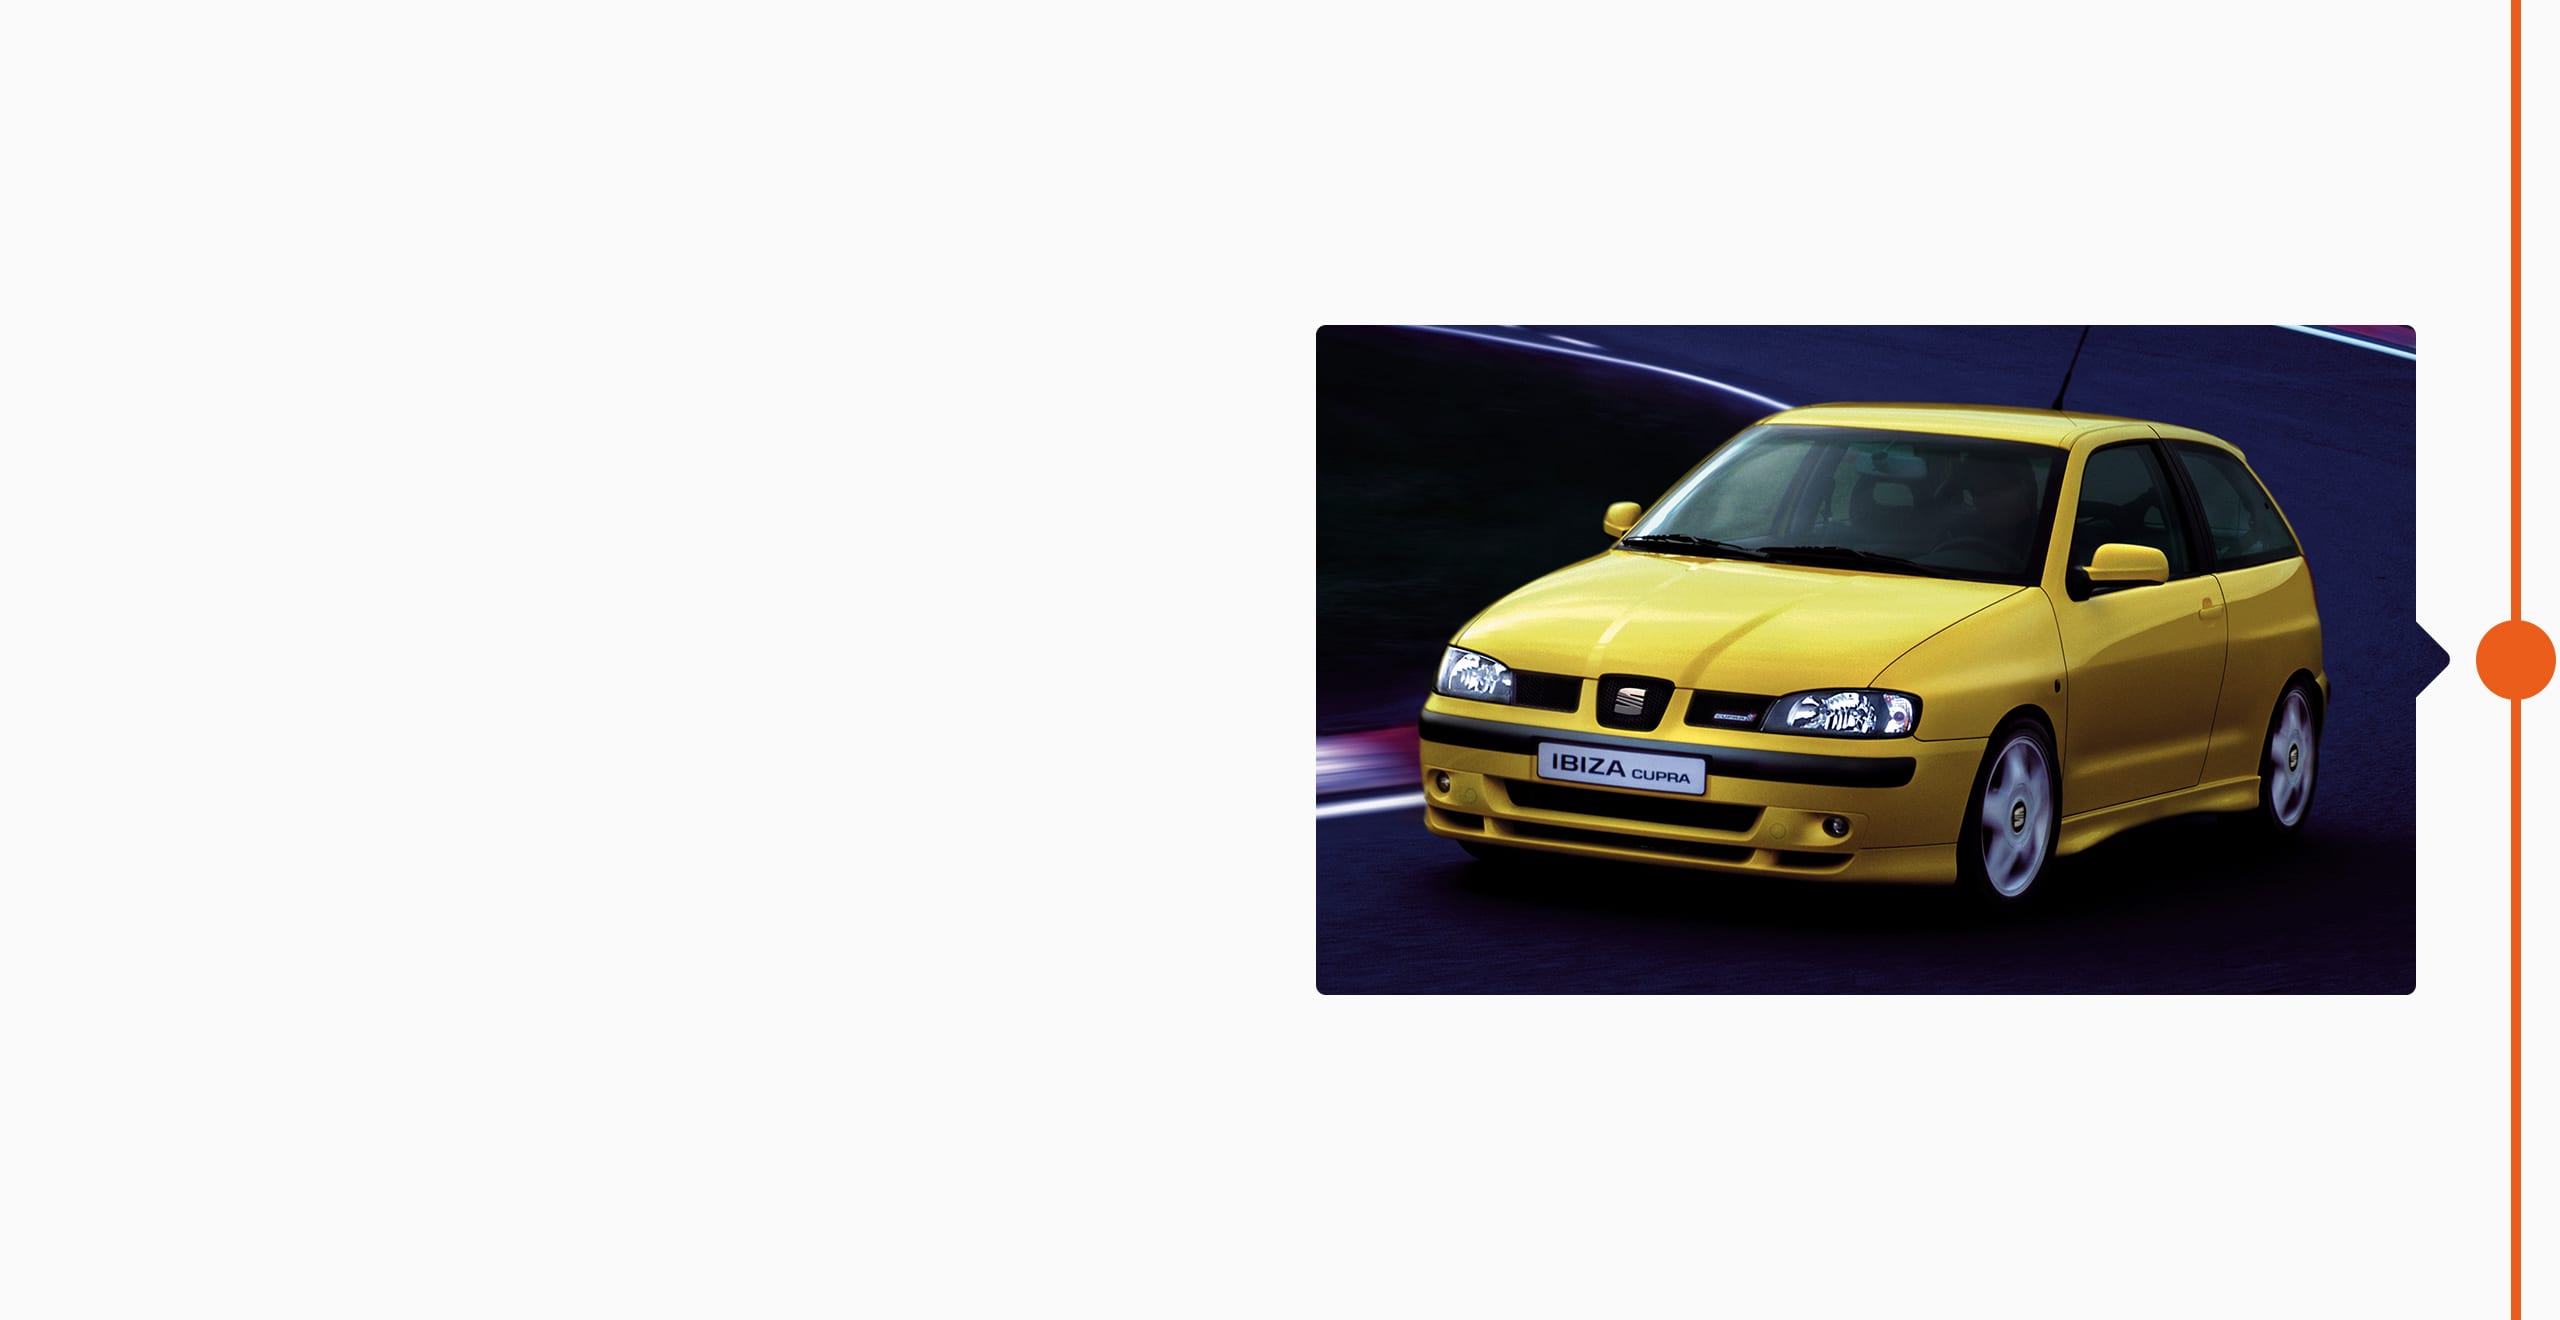 SEATi brändi ajalugu 1996 - FIA ralli maailmameistrivõistlused SEAT Ibiza Kit Car sportauto CUPRA bränd